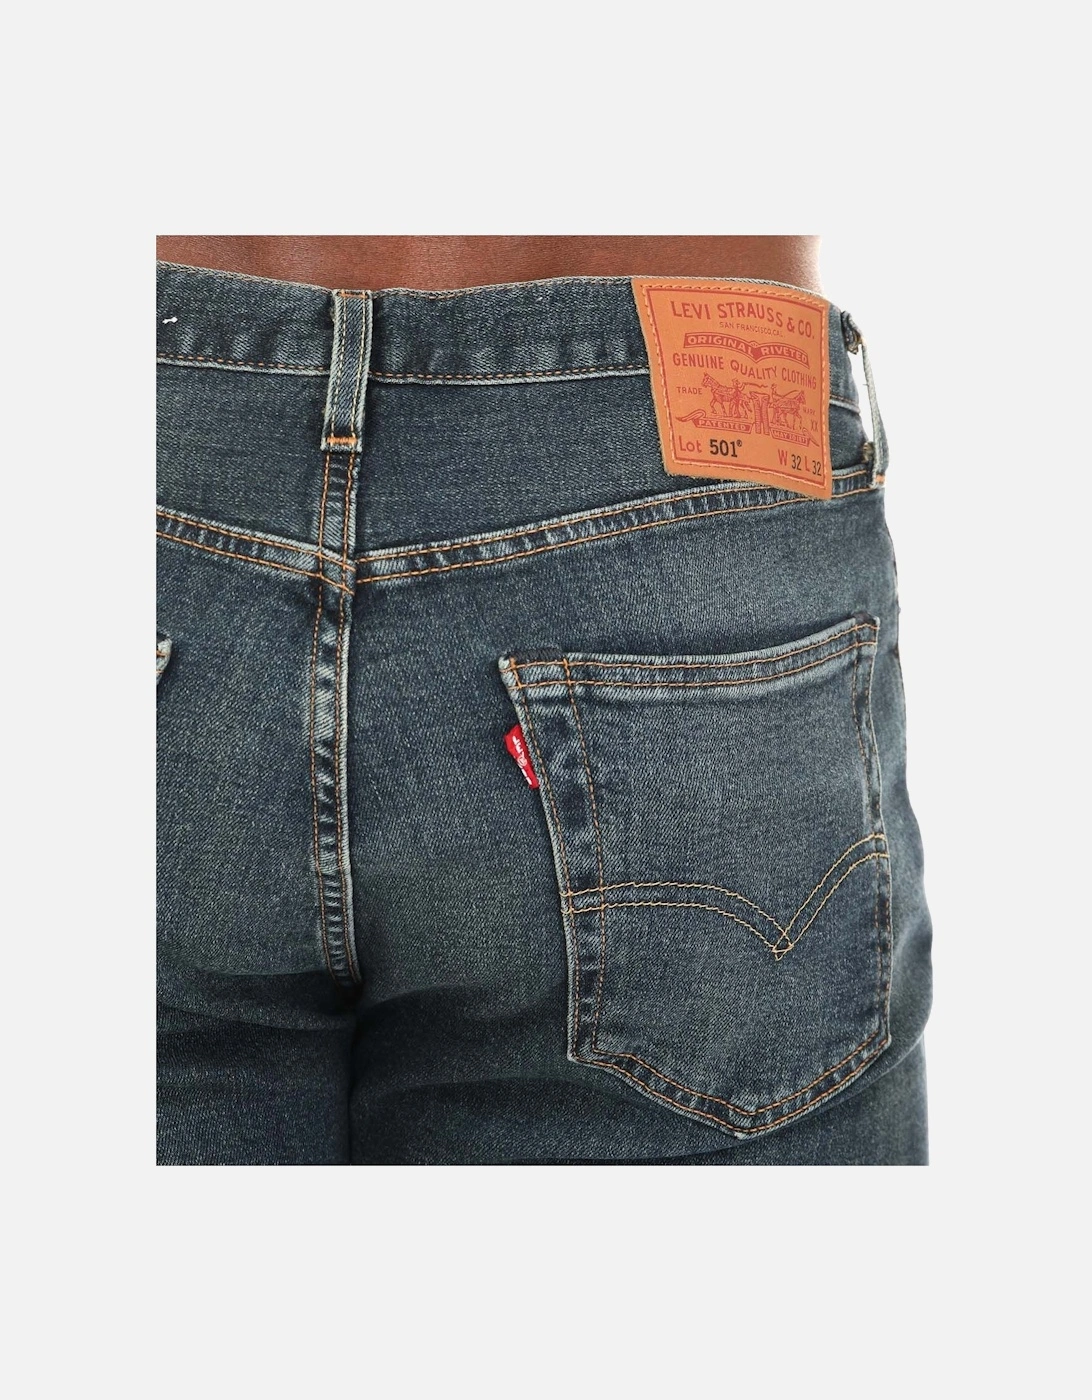 Mens 501 Original Snoot Jeans